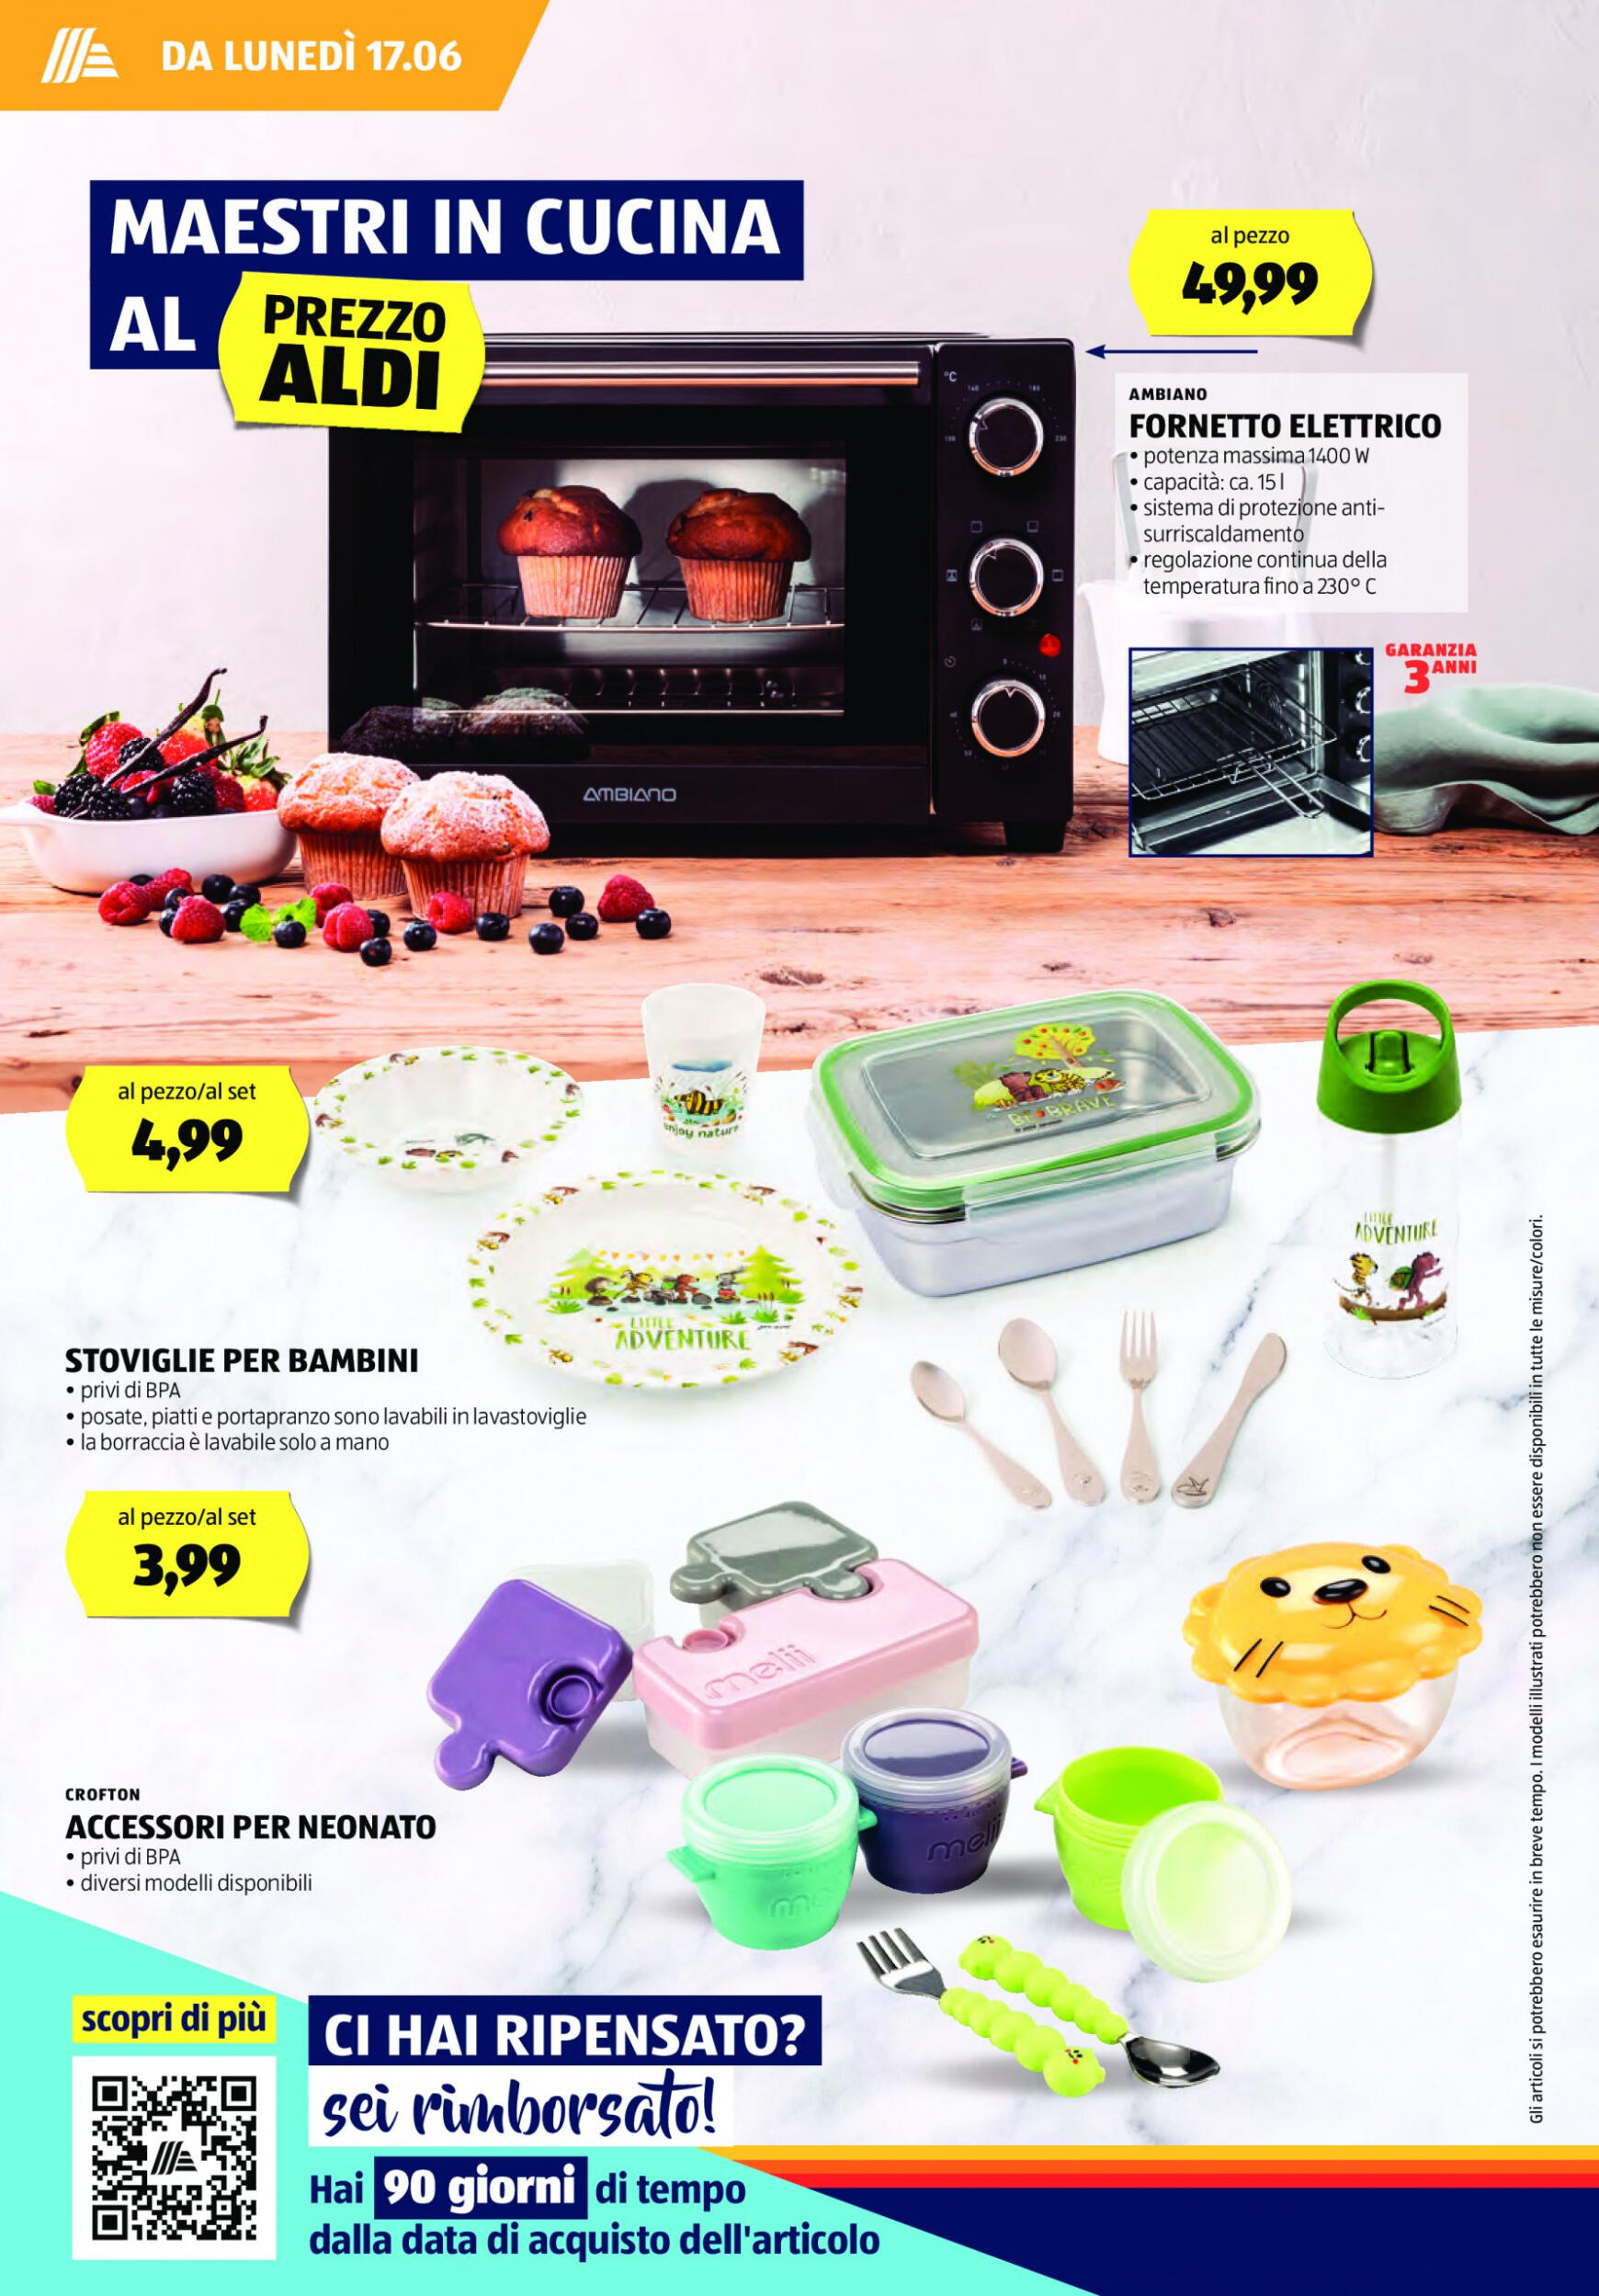 aldi - Nuovo volantino ALDI 17.06. - 23.06. - page: 16